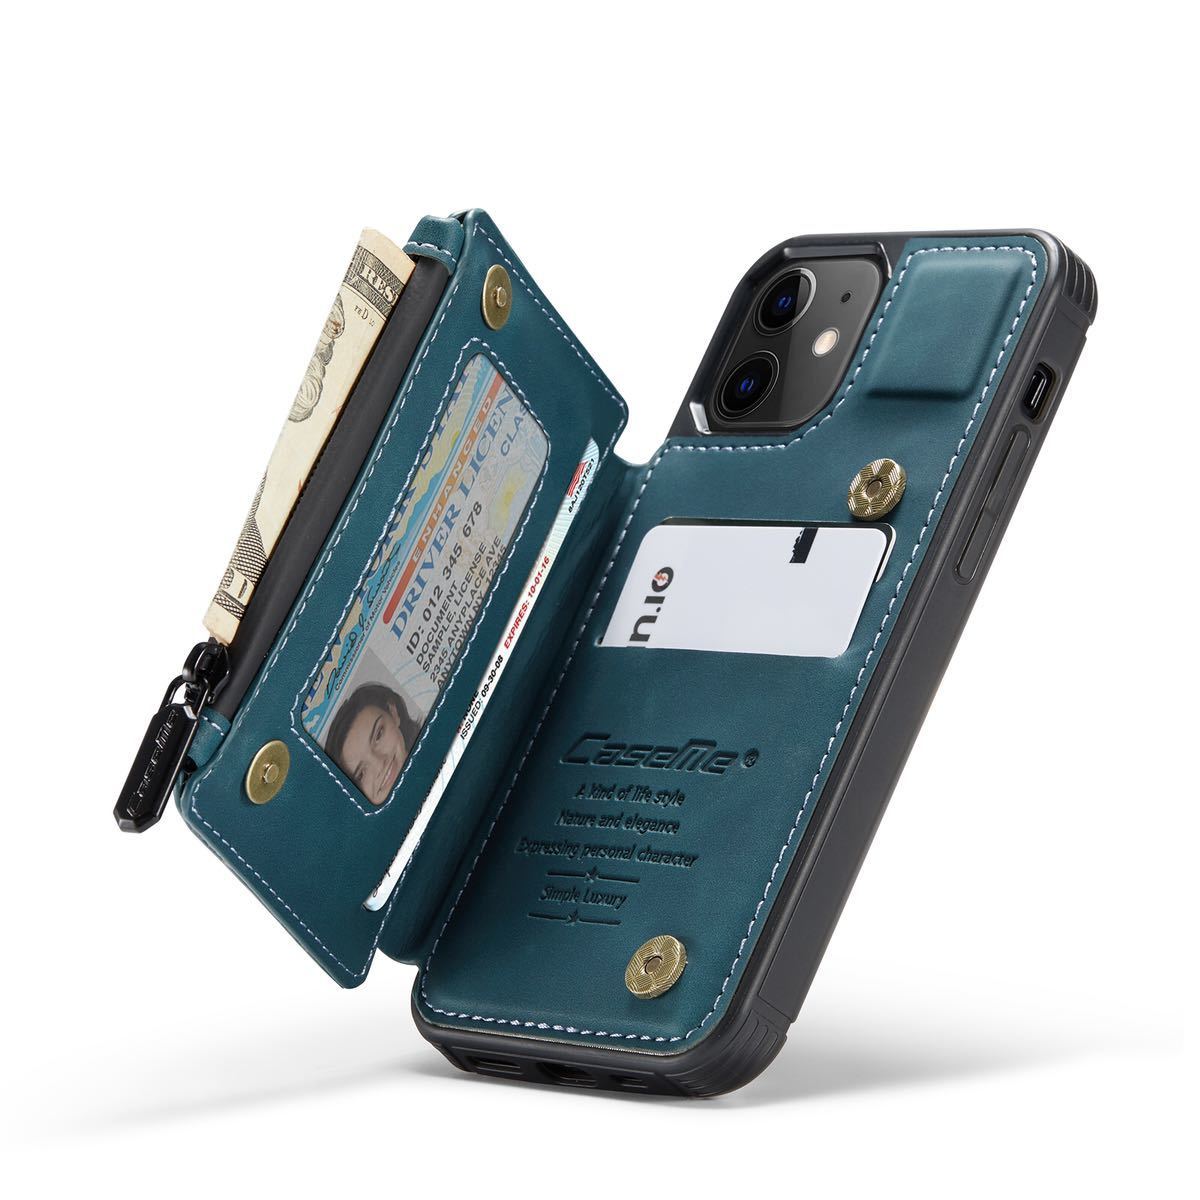 iPhone 12 mini кожанный кейс iPhone12 mini кейс iPhone 12 Mini покрытие . текстильная застёжка с карманом карта место хранения покрытие голубой 